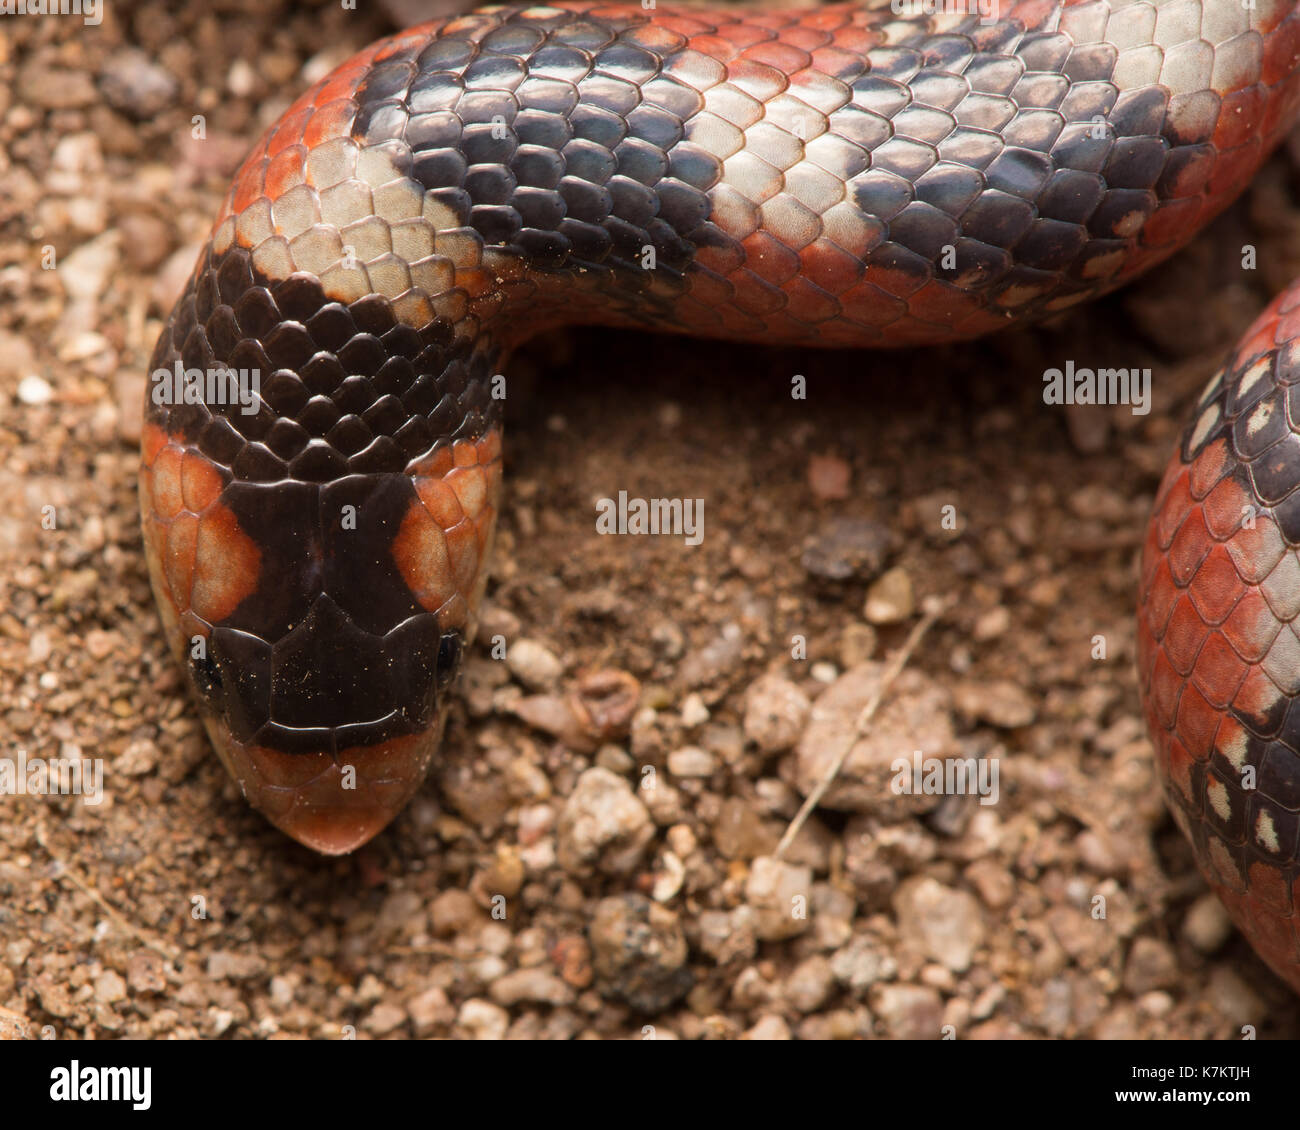 Tornfriega serpiente de nariz de gancho (Gyalopion quadrangulare) de Sonora, México. Foto de stock